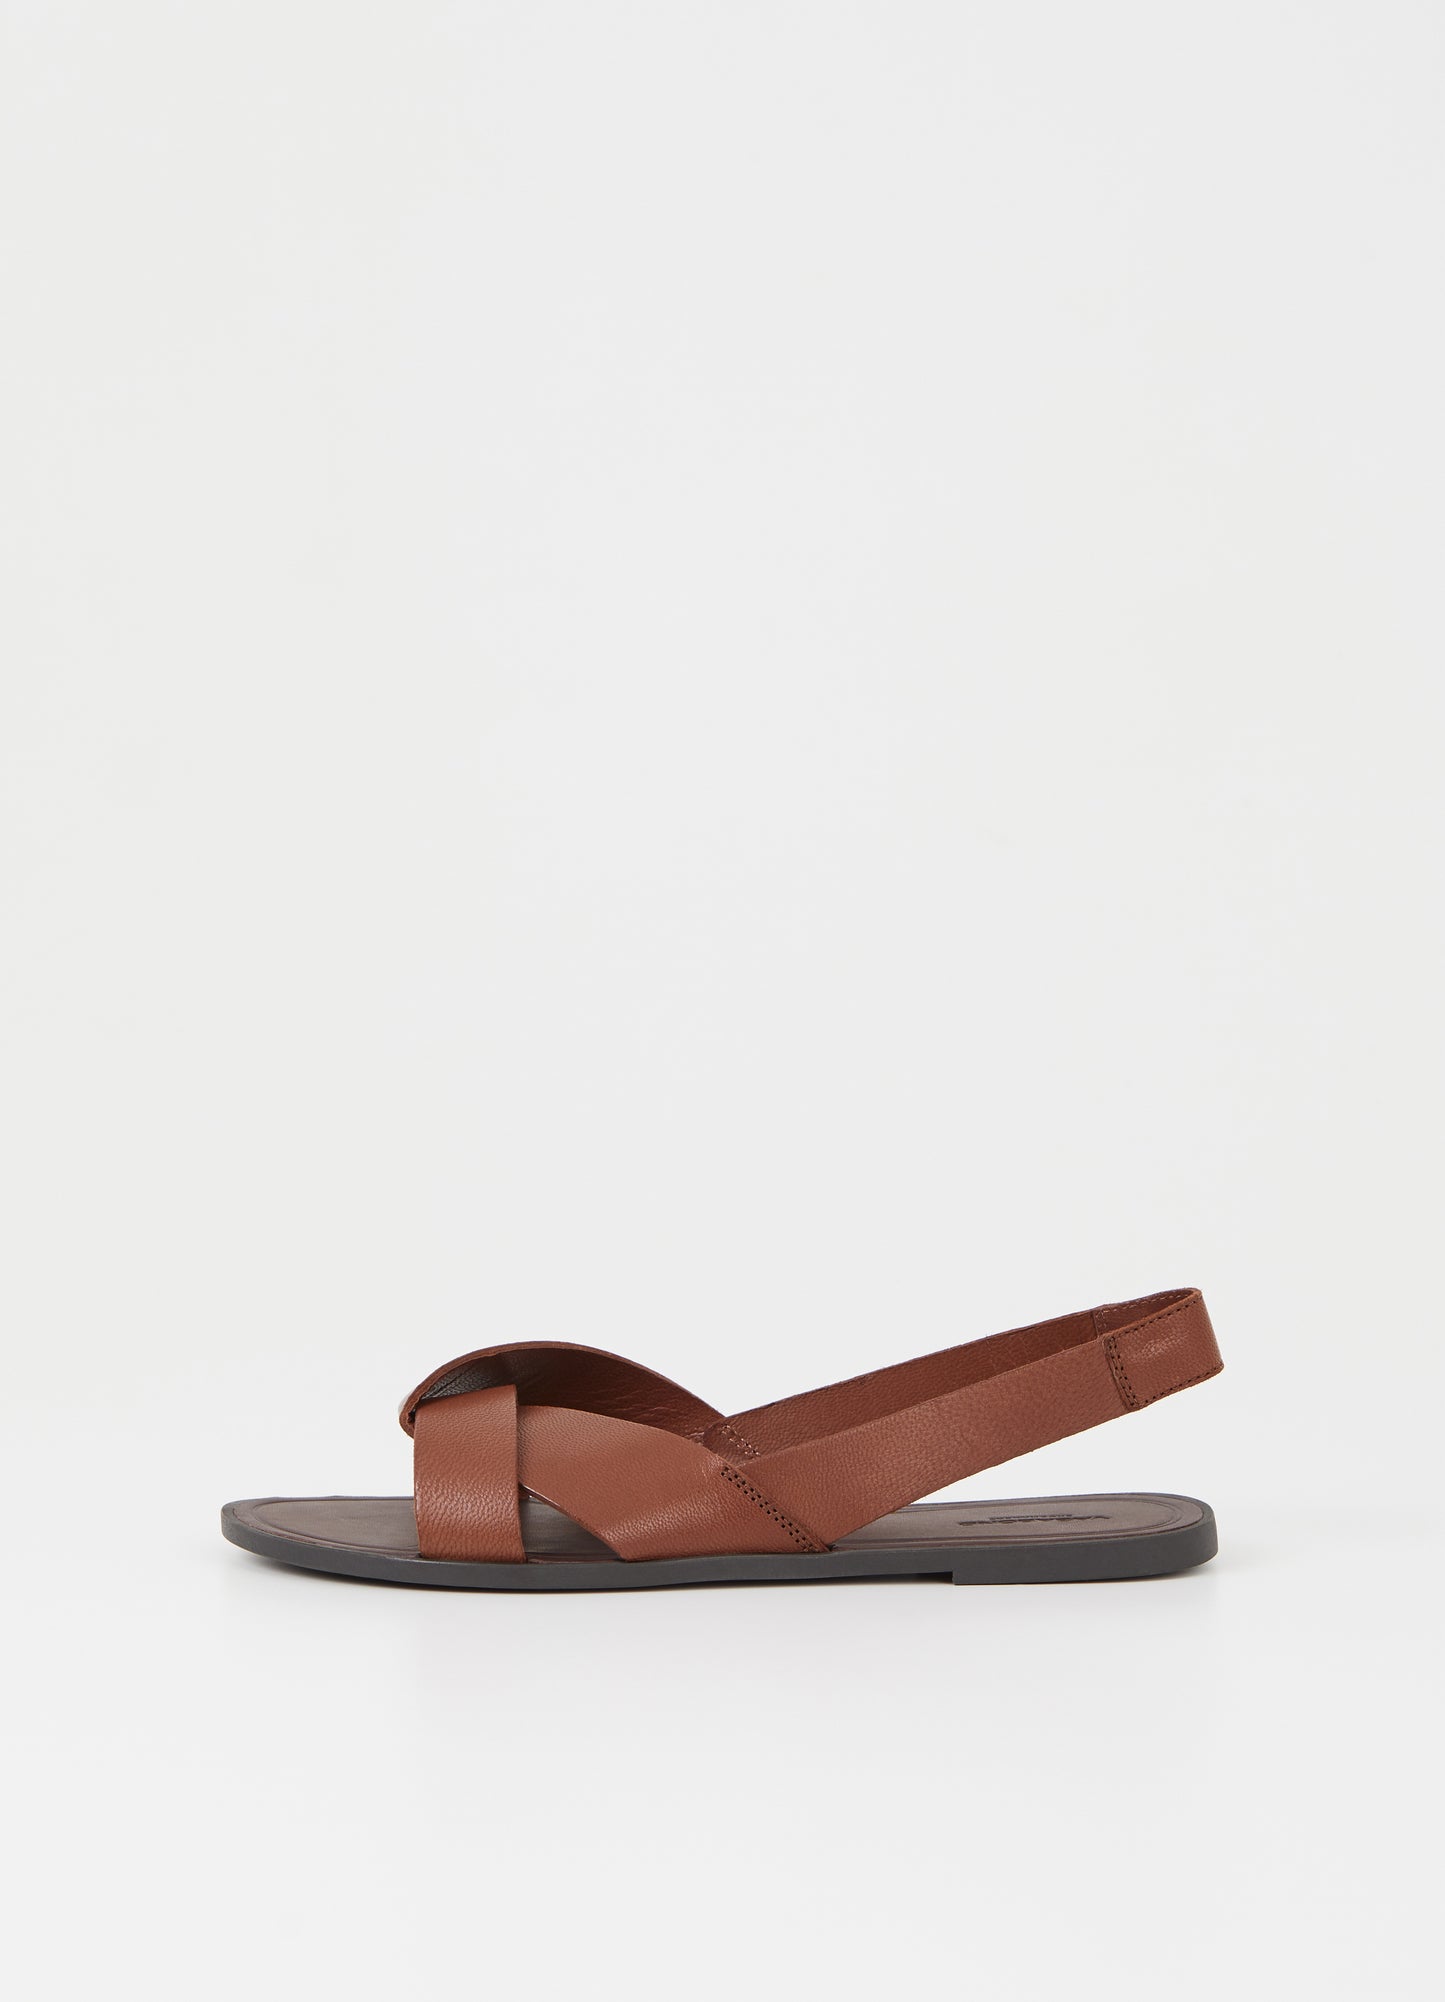 Vagabond - Women's Tia 2.0 shovel sandal in cognac leather